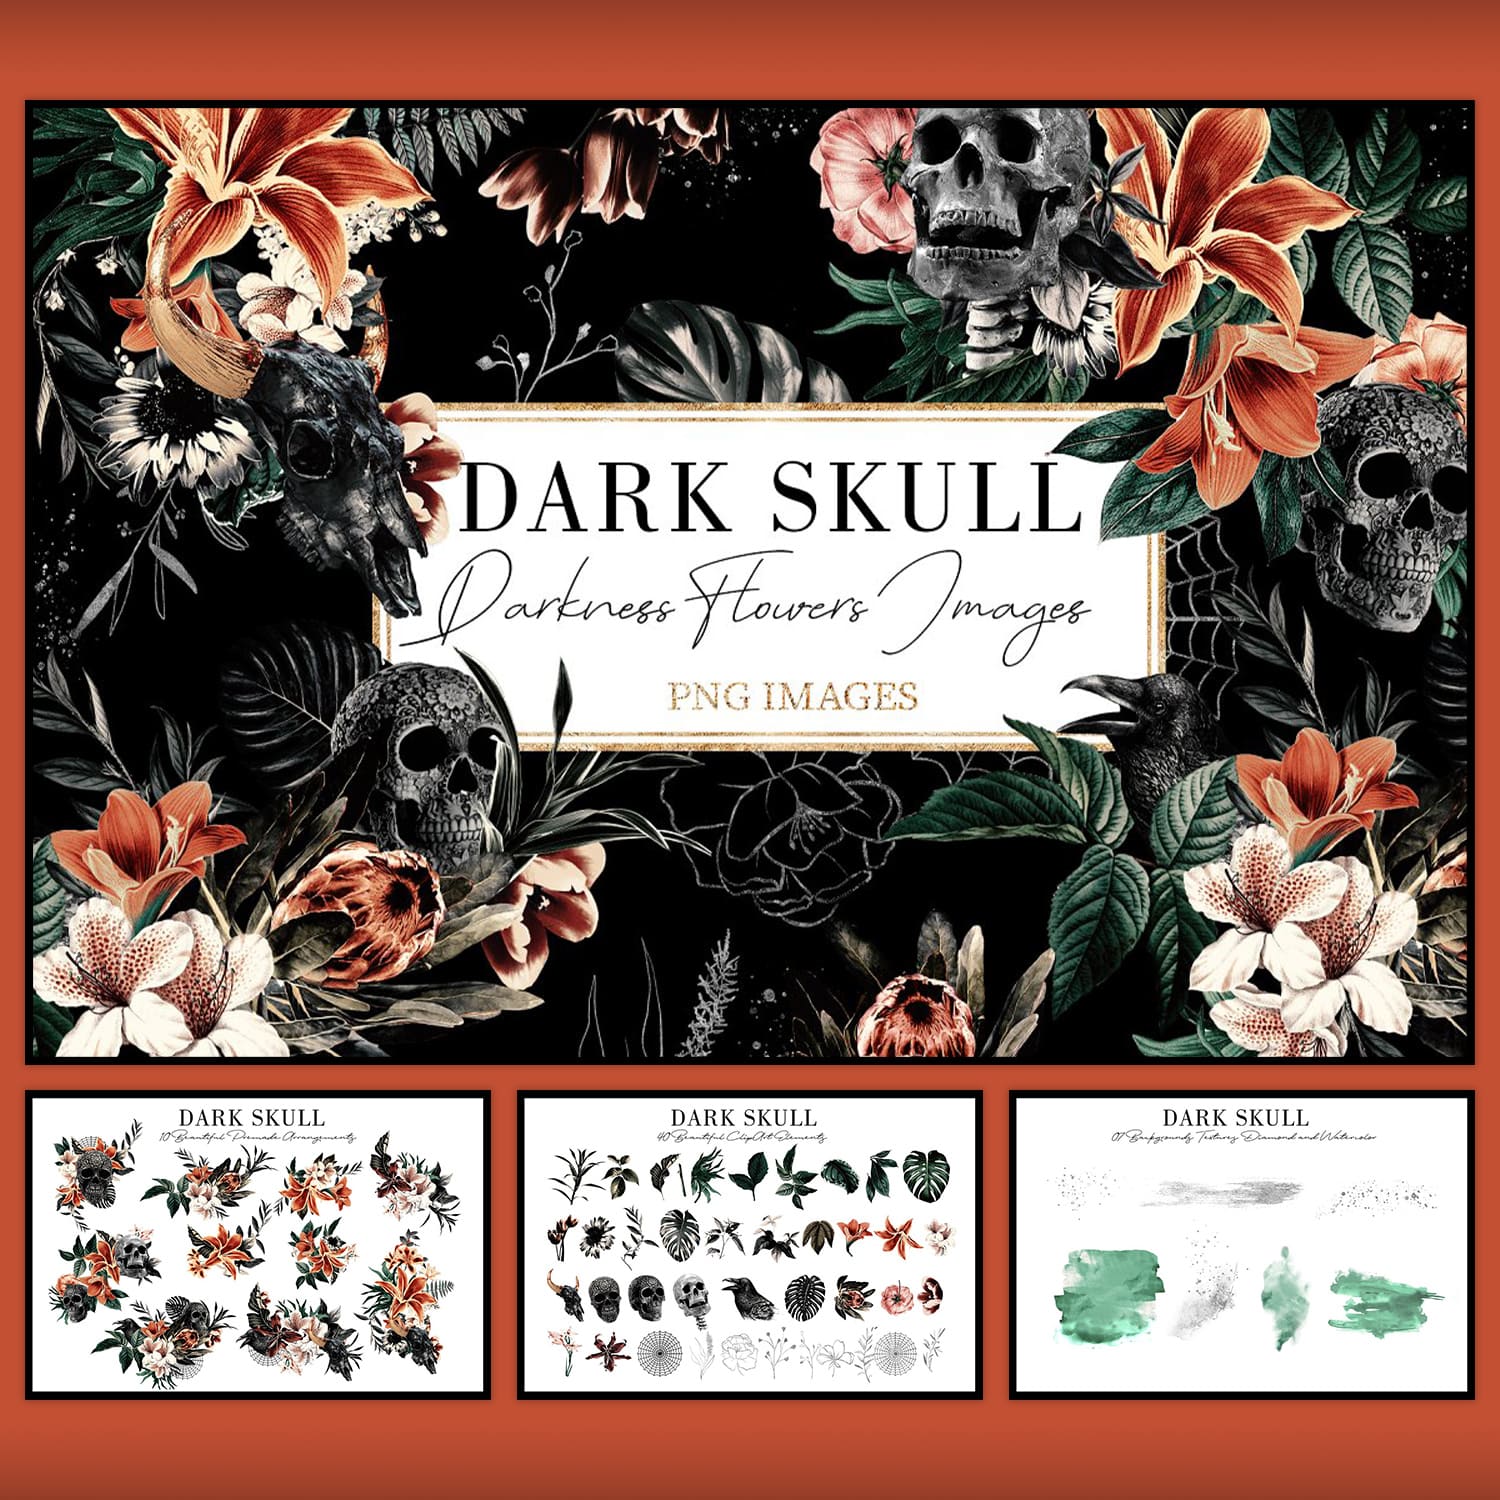 Dark Skull cover image.